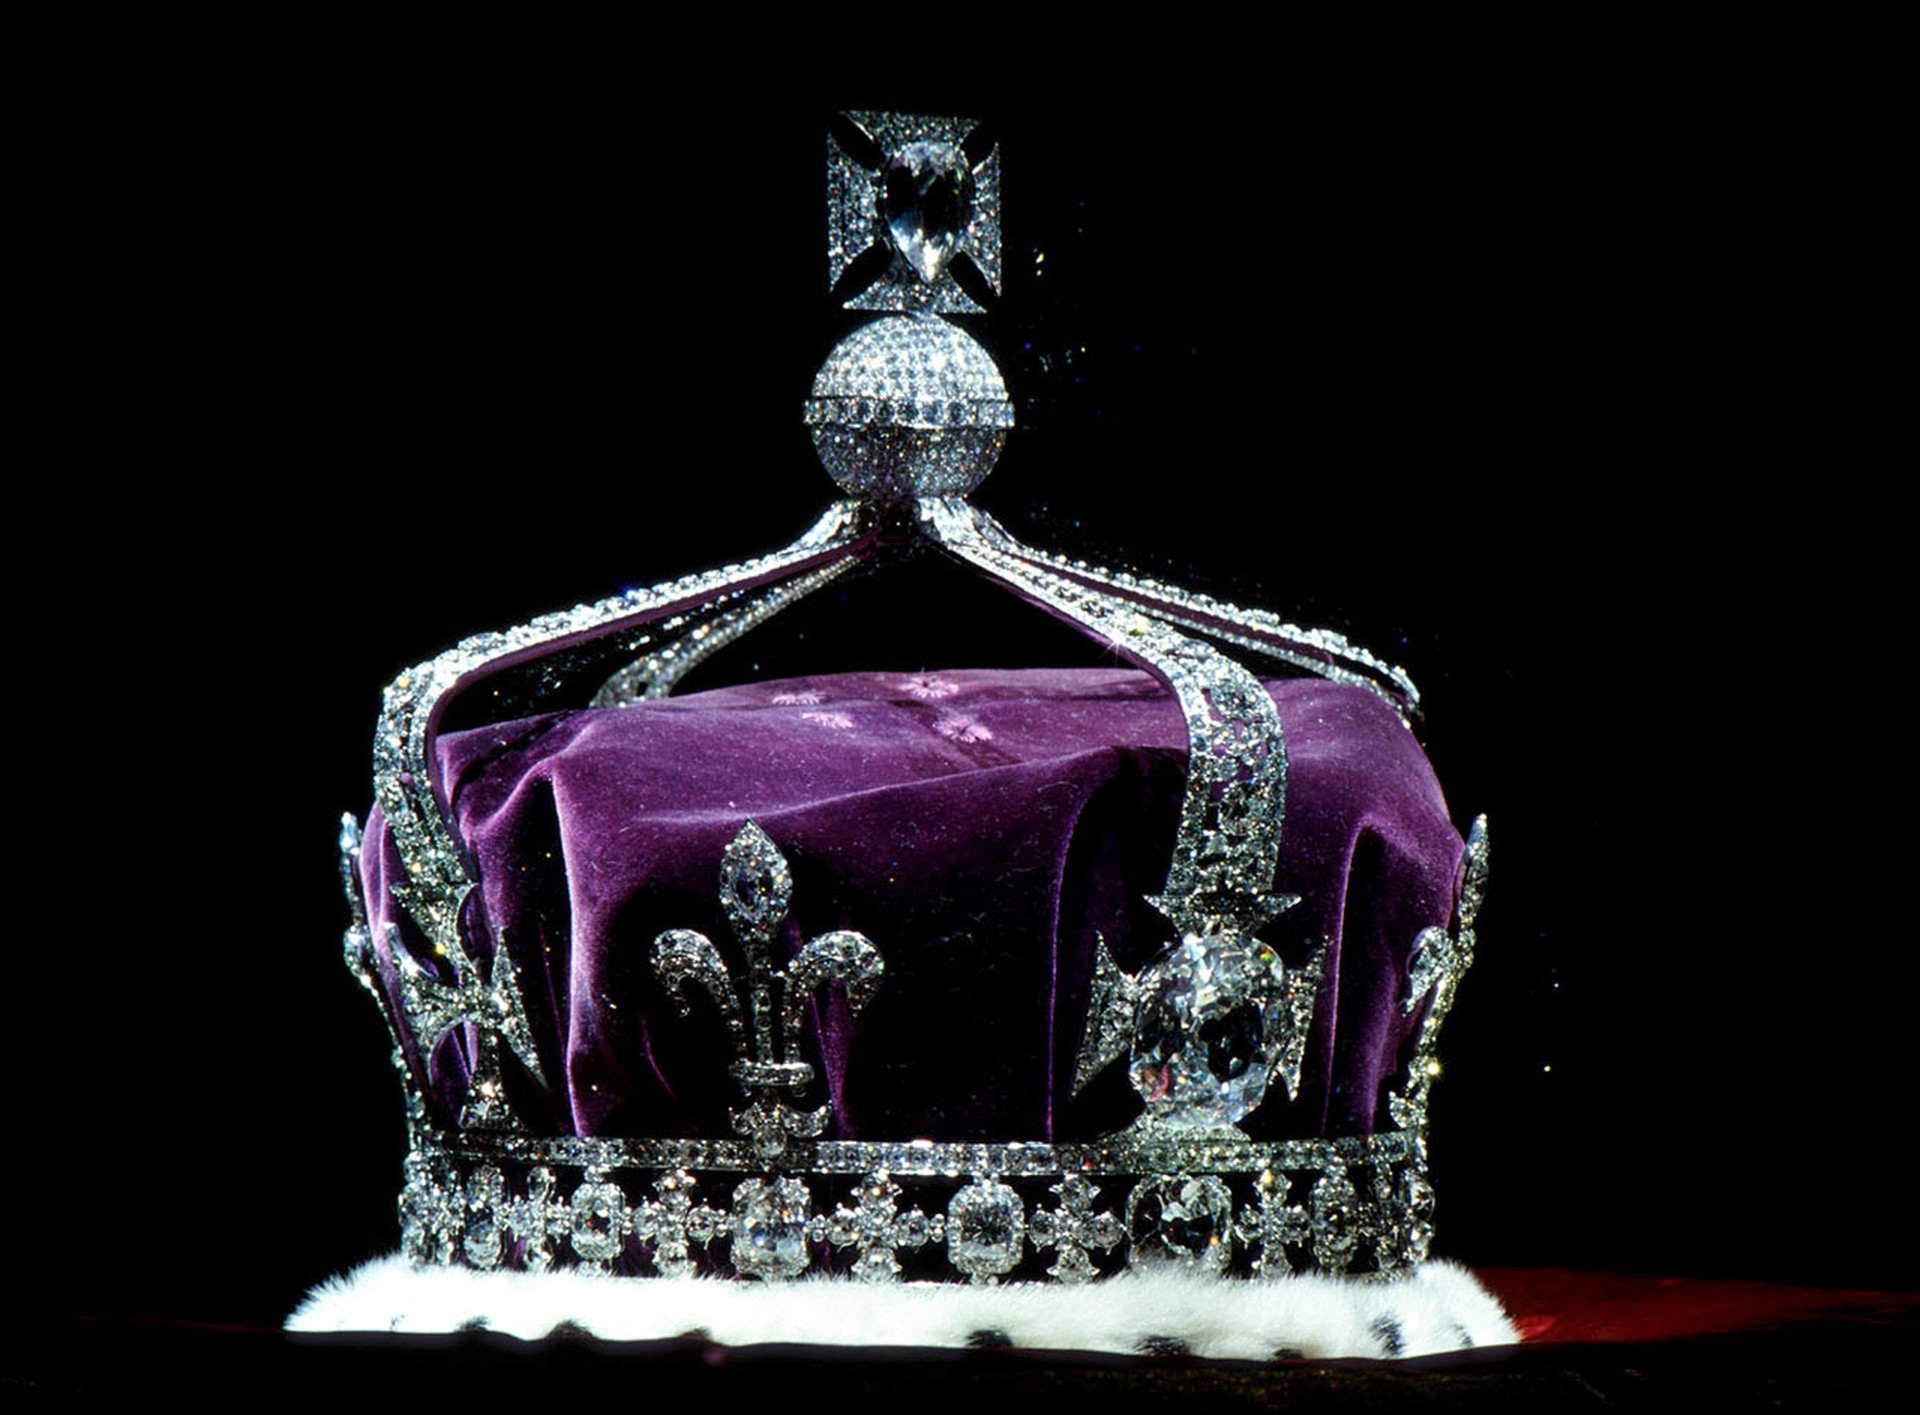 151856 Заставки и Обои Корона на телефон. Скачать бриллианты, корона, украшение, разное картинки бесплатно